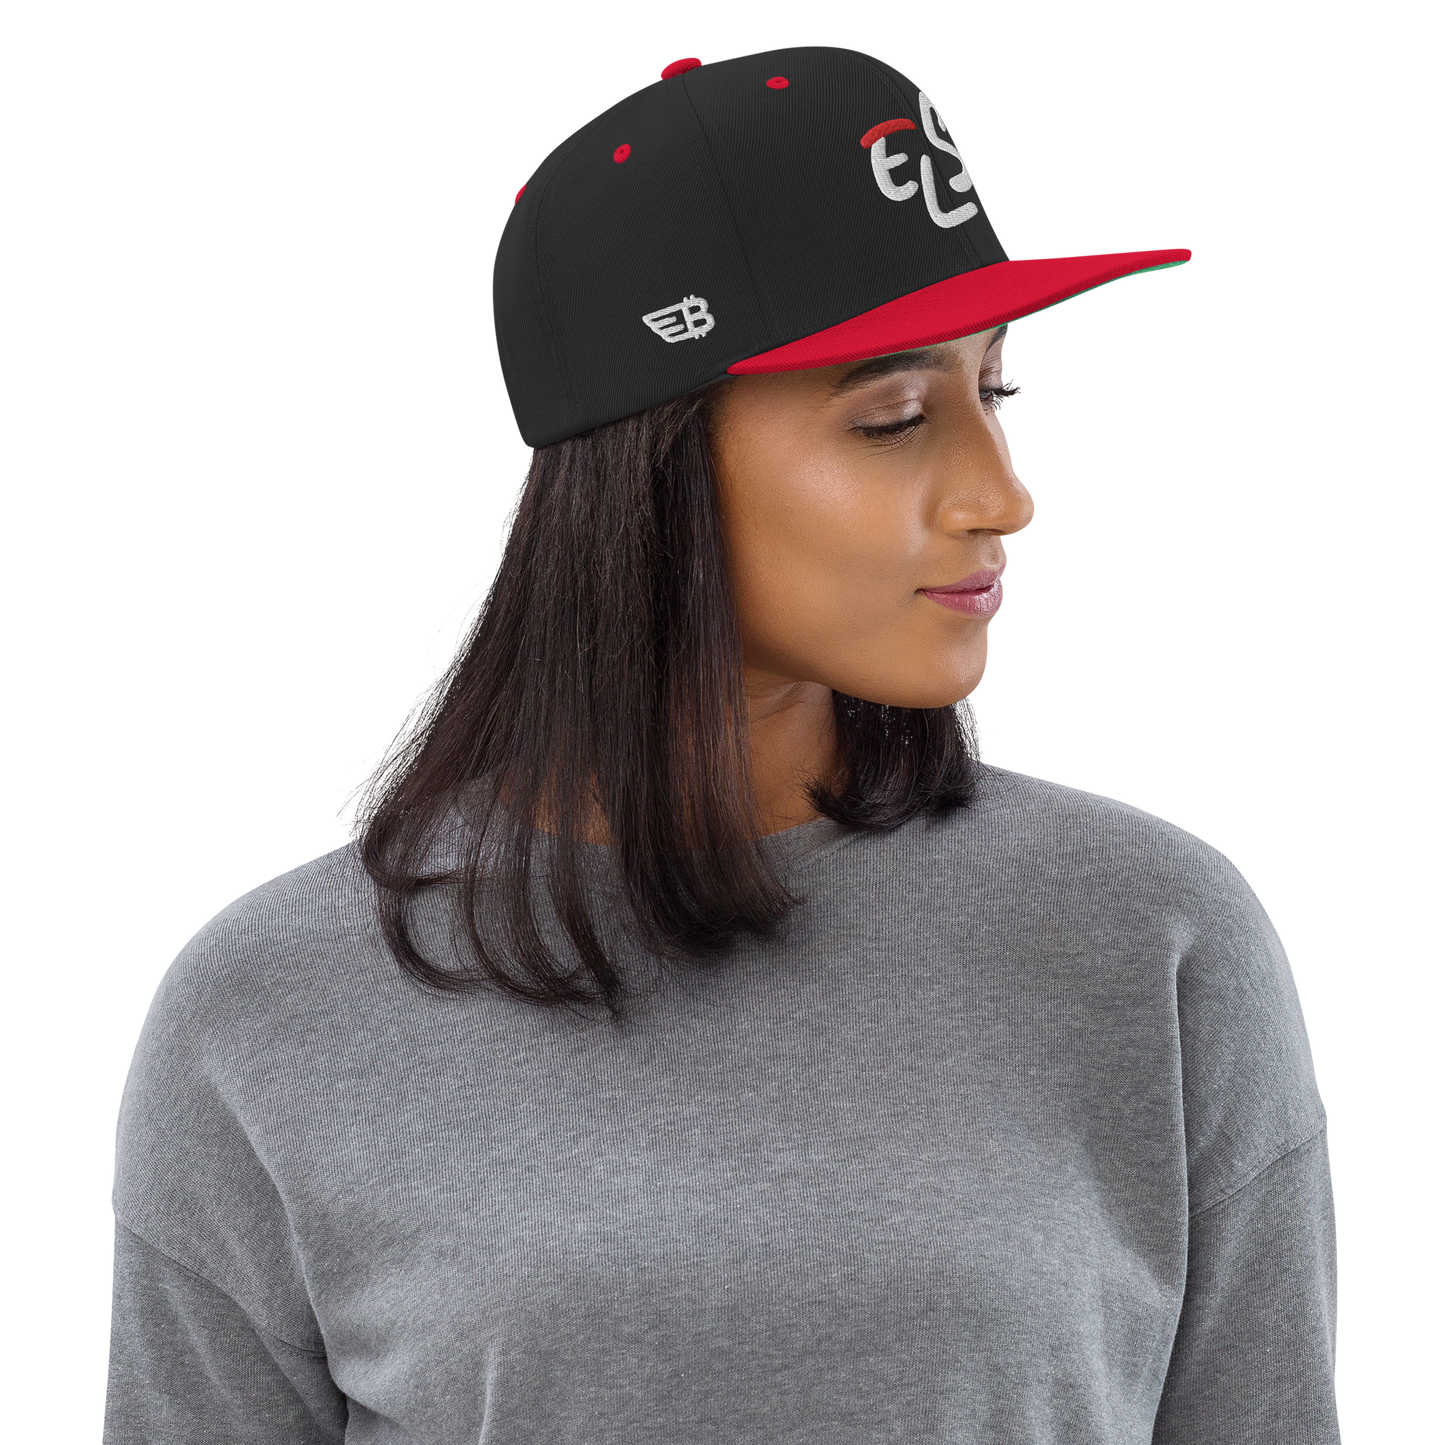 "EL Salvador" Black/Red Snapback Hat 3D Puff